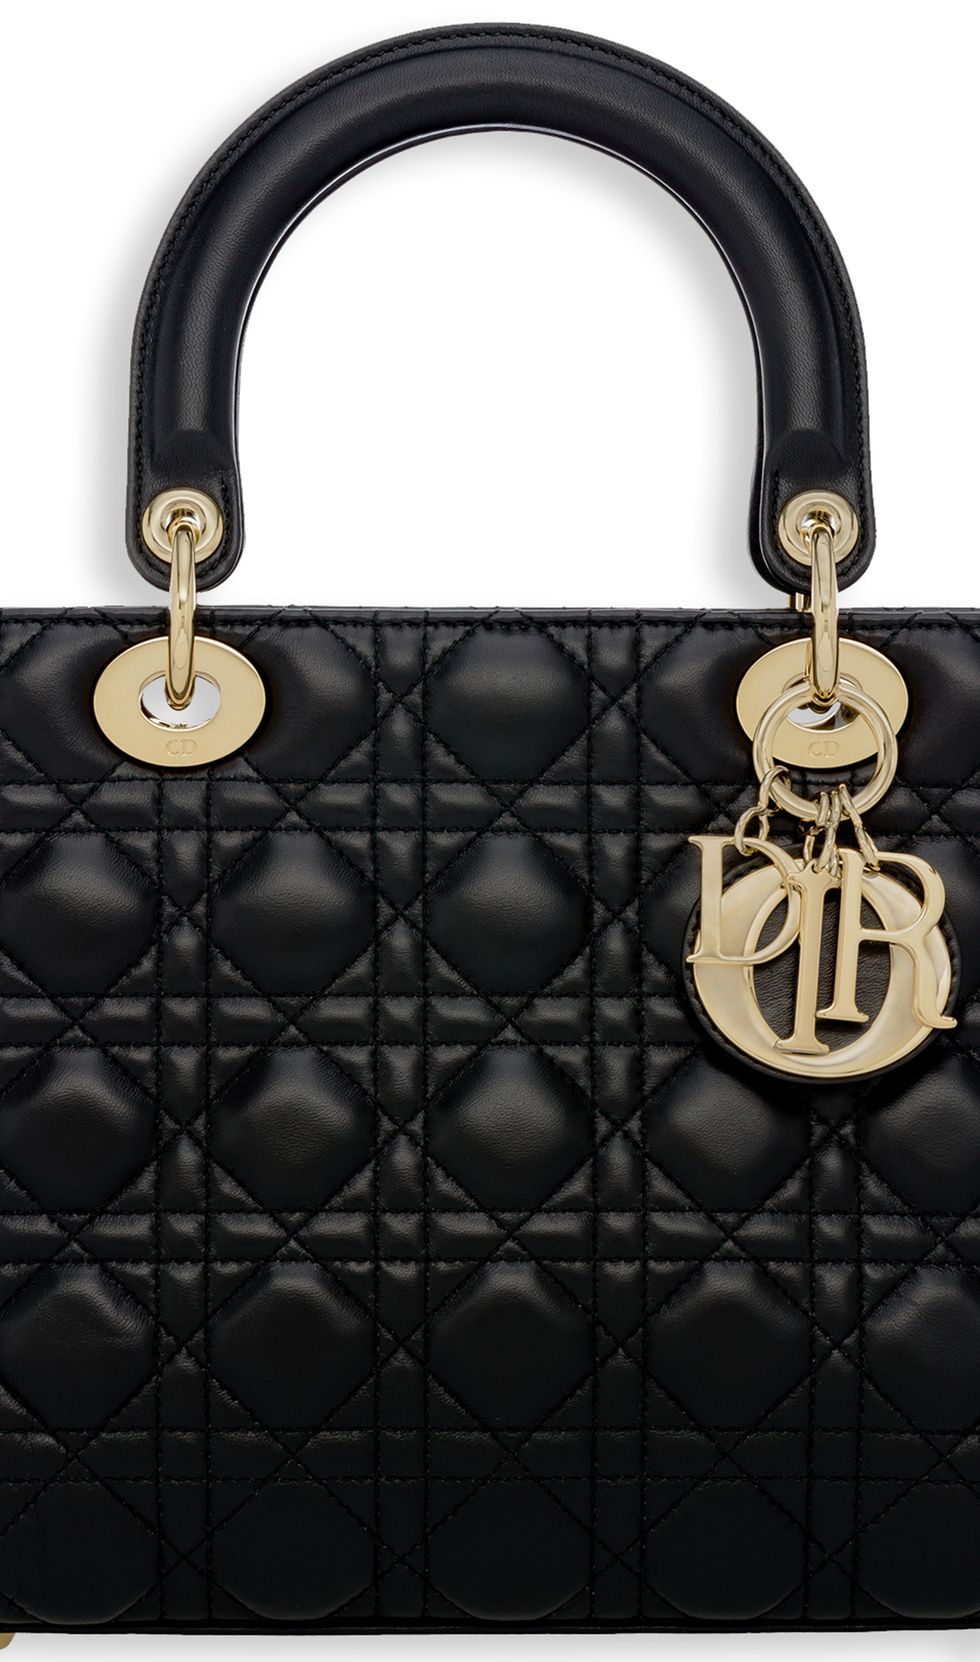 Lady Dior bag, Dior